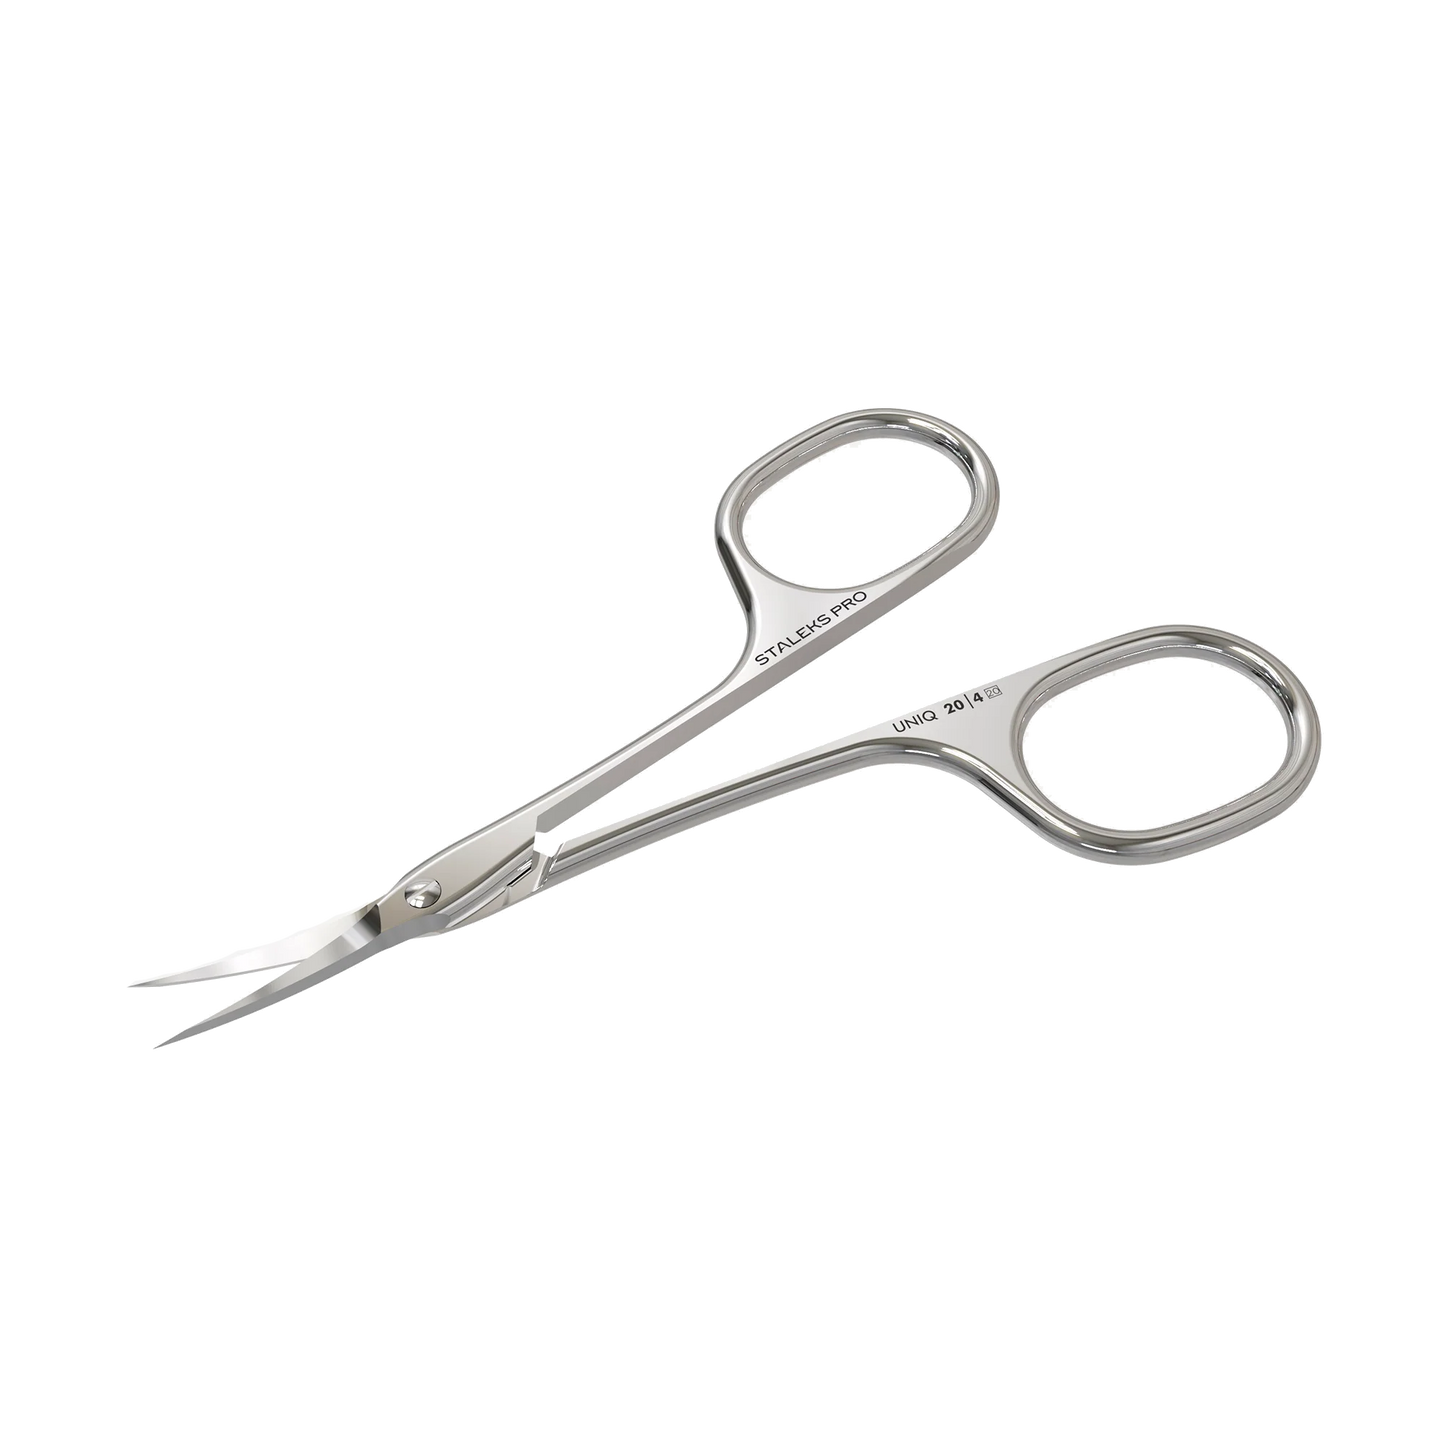 Professional Cuticle Scissors "Asymmetric" UNIQ 20 TYPE 4 -SQ-20/4